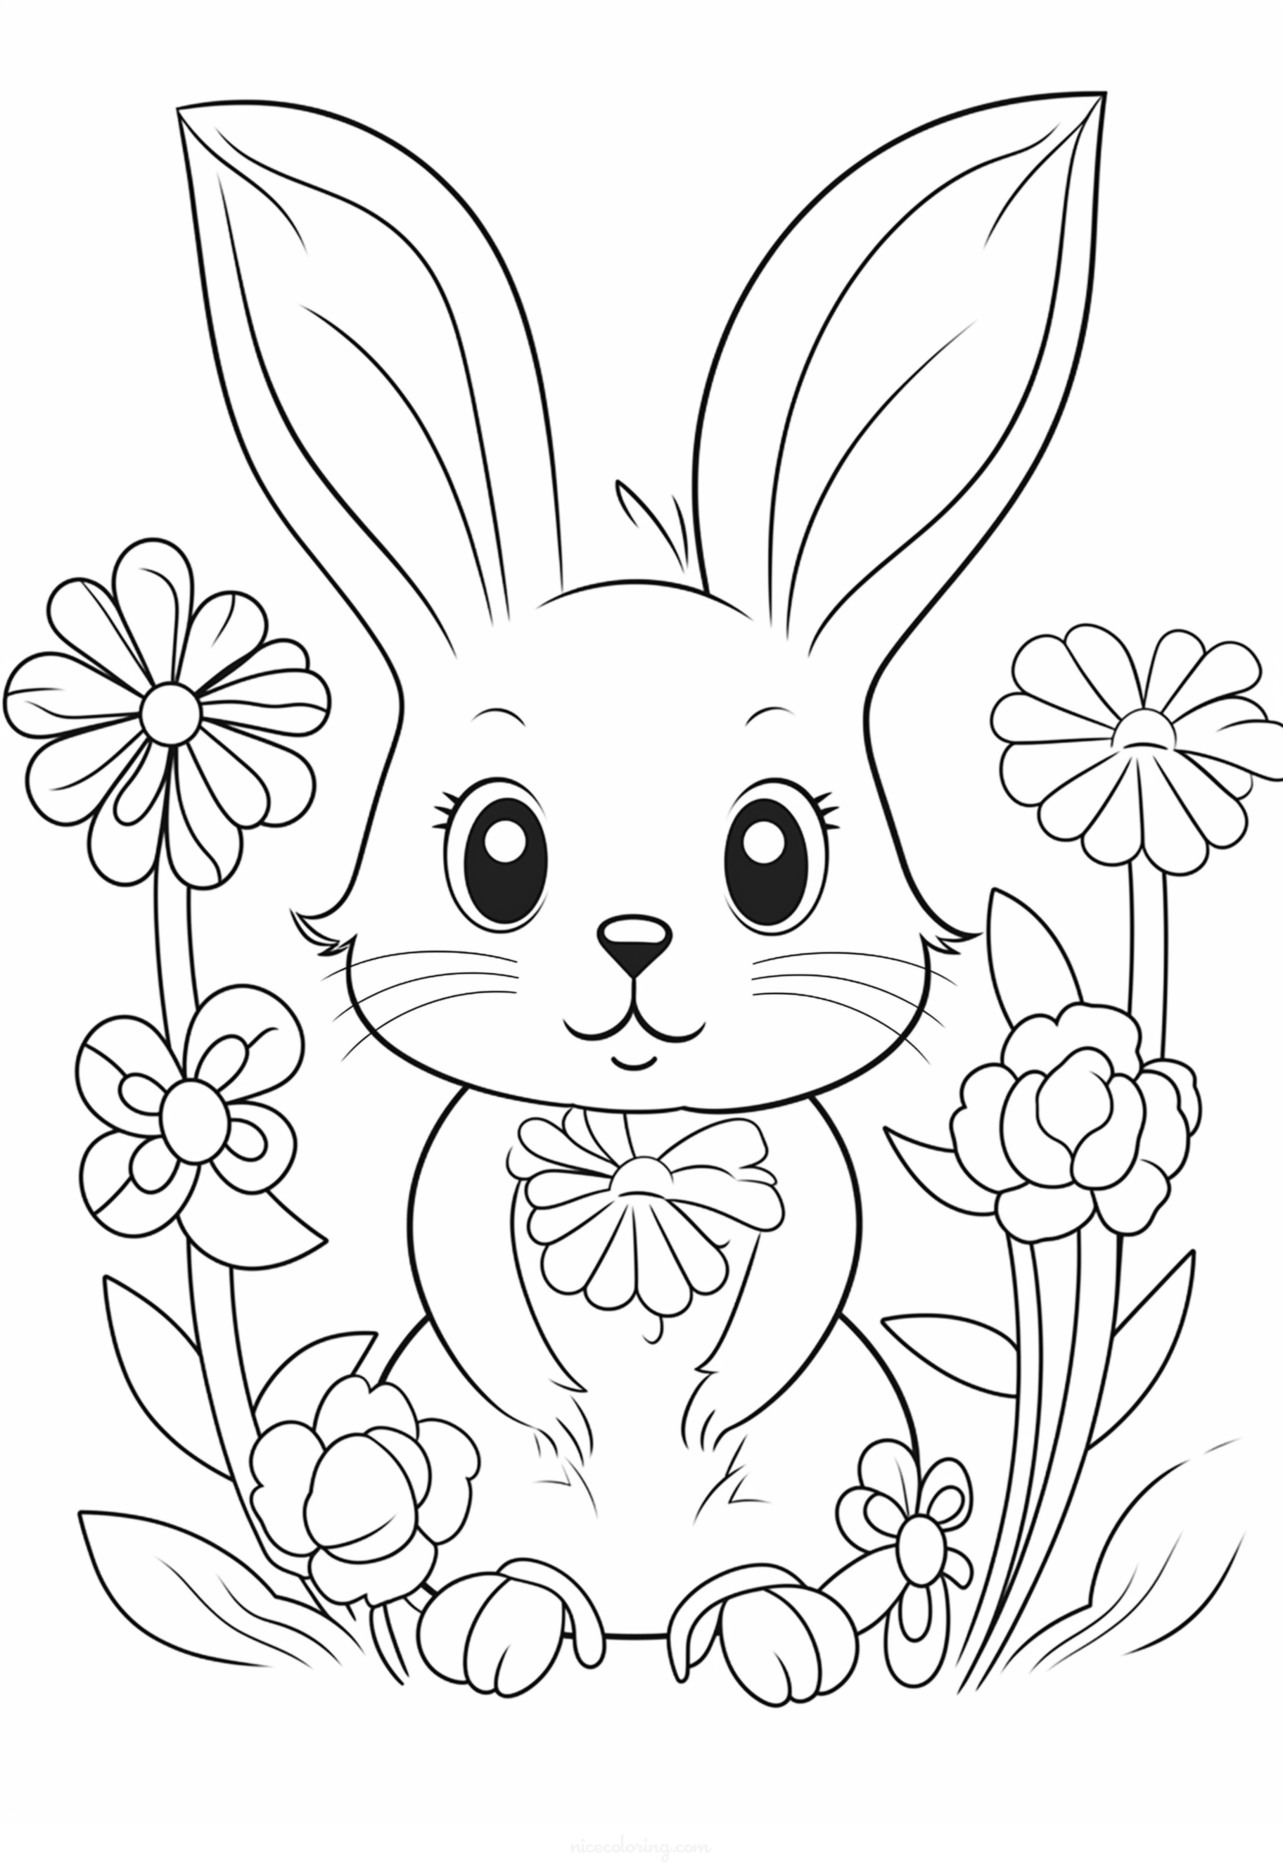 Immagine da colorare di un coniglio con fiori